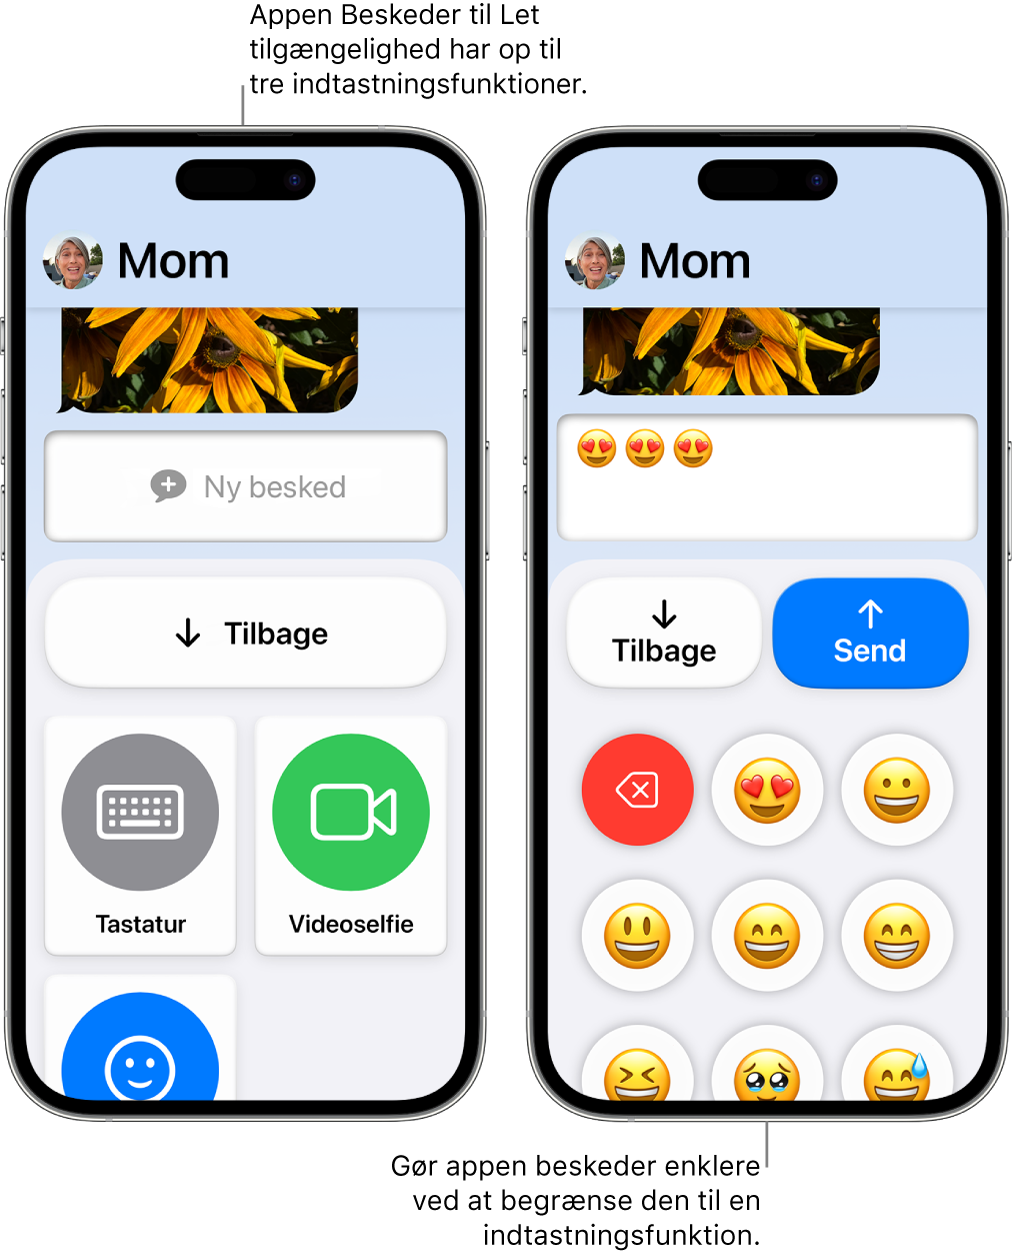 To iPhone-enheder i Let tilgængelighed. En iPhone, der viser appen Beskeder med indtastningsmetoder, som brugeren kan vælge mellem, f.eks. Tastatur eller Videoselfie. Den anden viser en besked, der sendes ved hjælp af et tastatur, der kun har emoji.